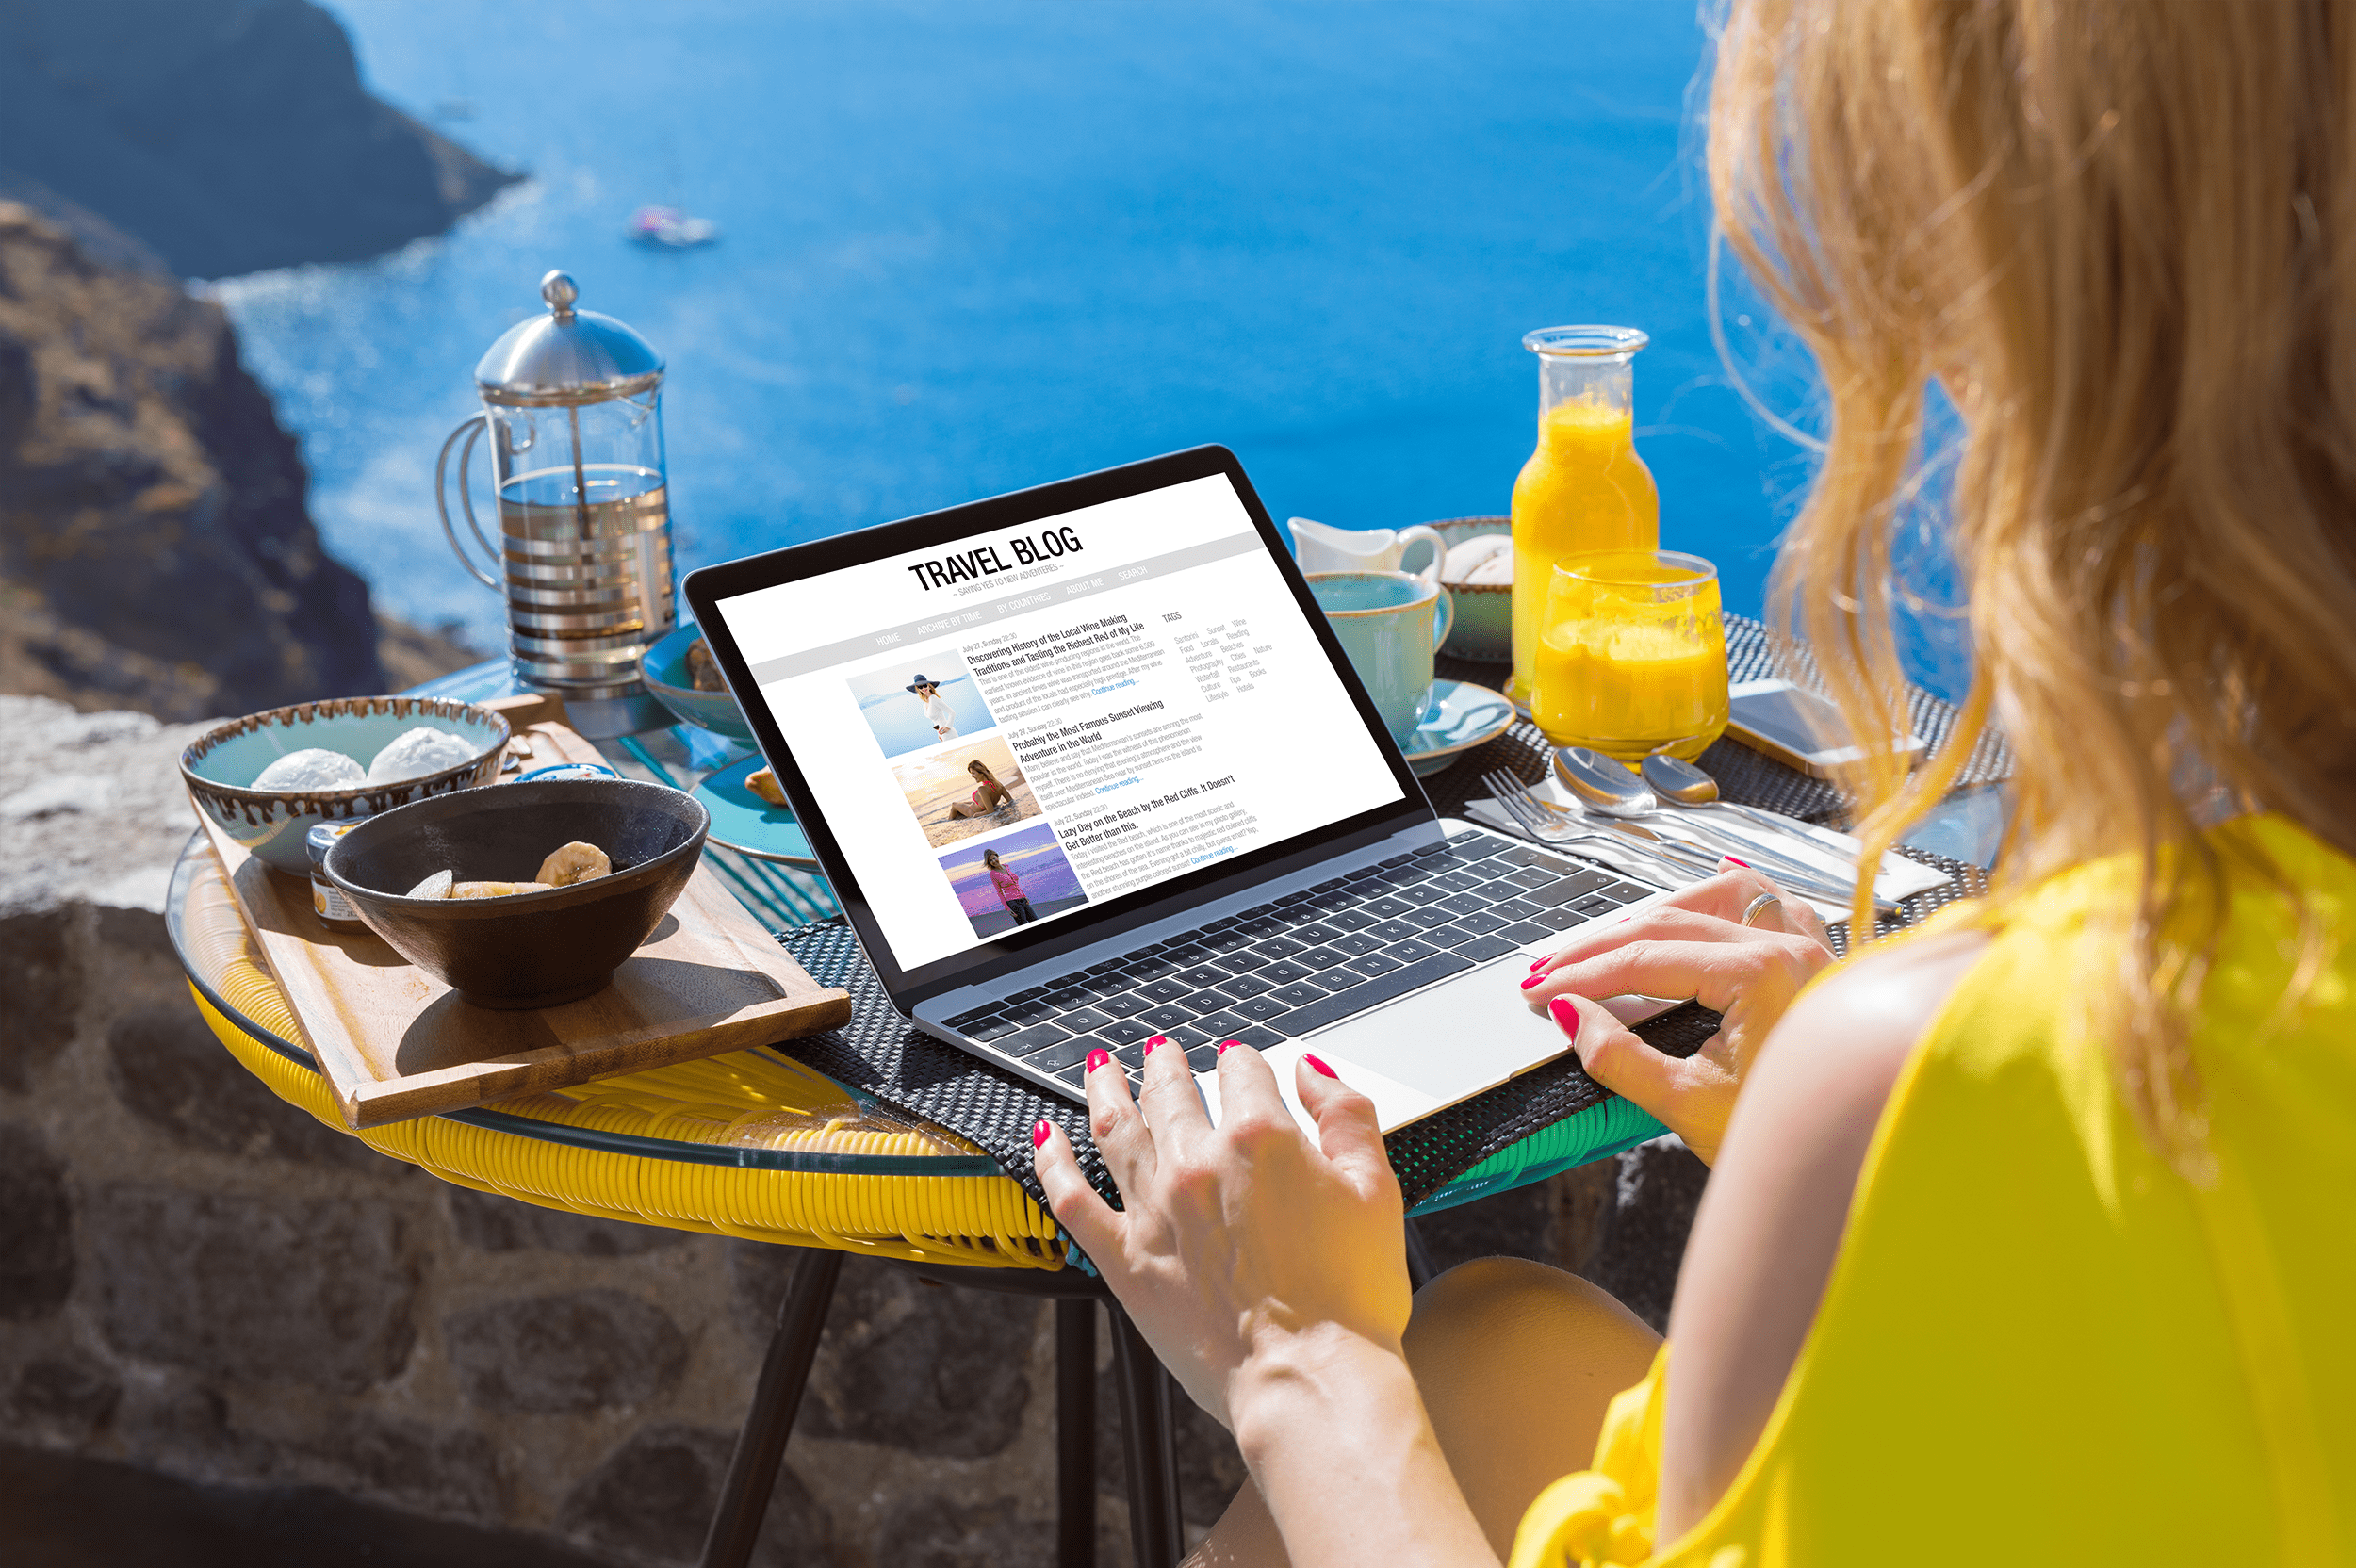 31 Reiseblogger und Blogging-Profis teilen ihre Top-Tipps für das Wachstum eines Reiseblogs